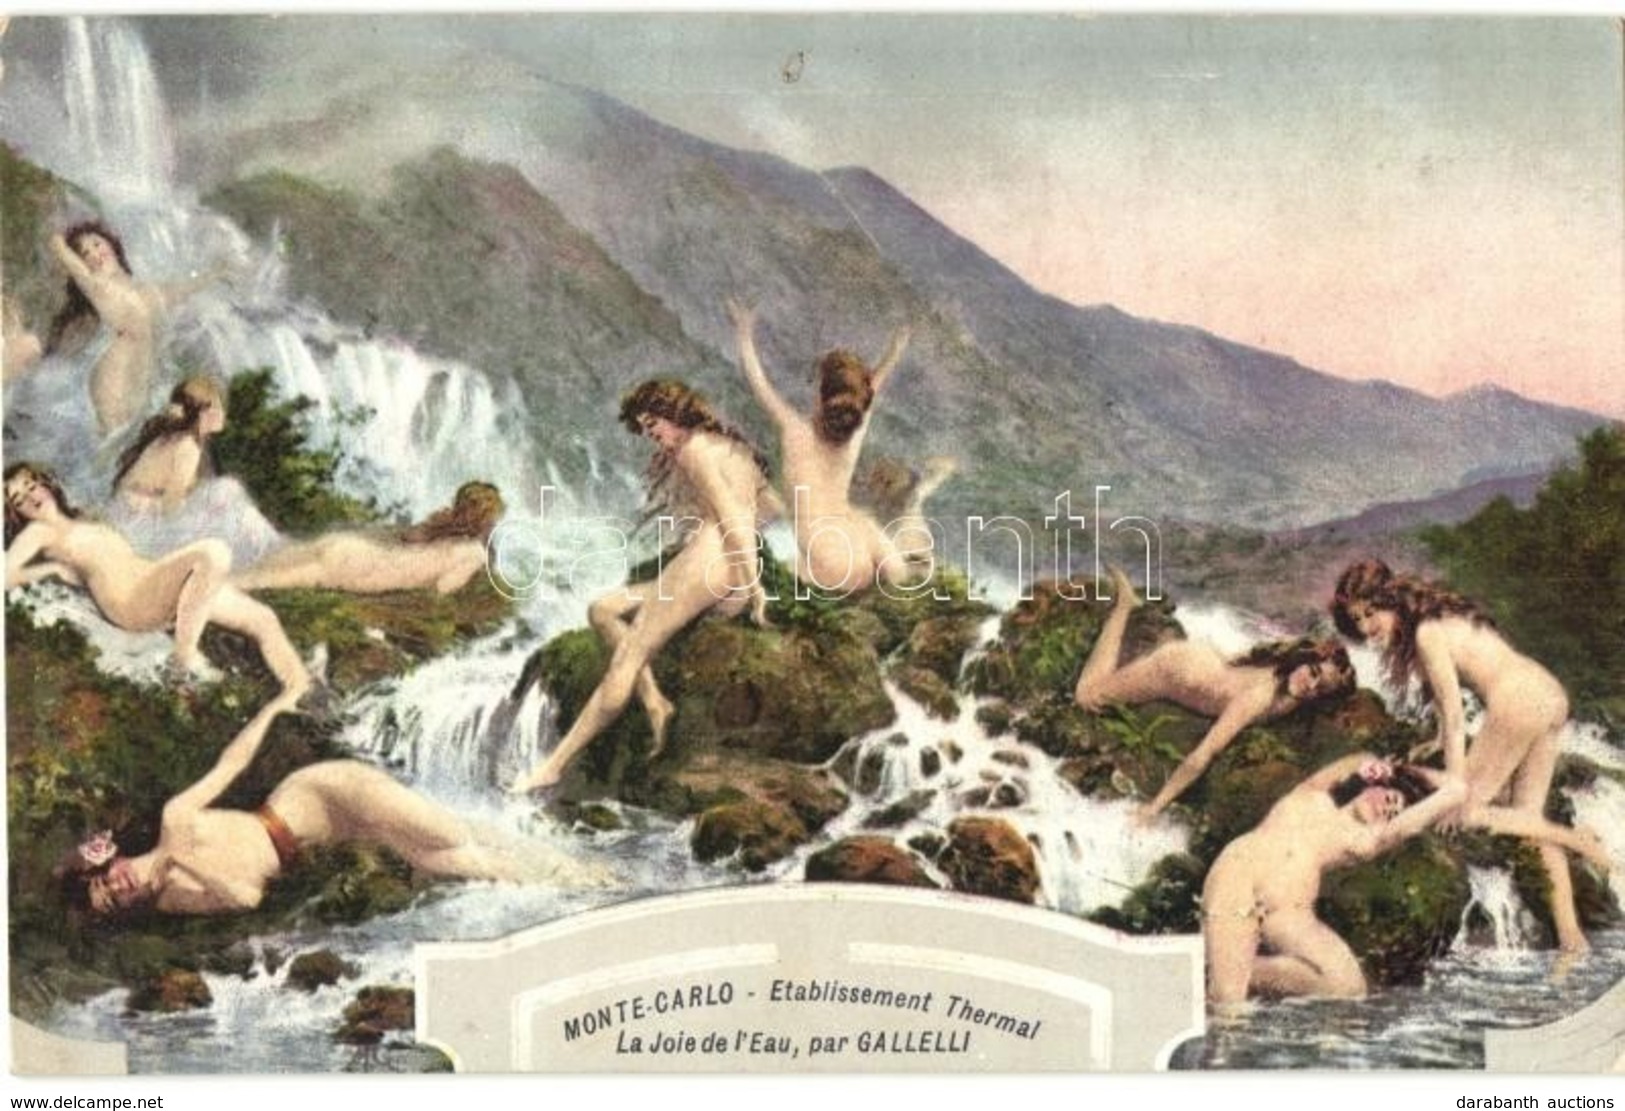 ** T2/T3 Monte-Carlo Etablissement Thermal La Joie Del'Eau / Erotic Nude Lady Advertising Art Postcard S: Galleli (fl) - Non Classés